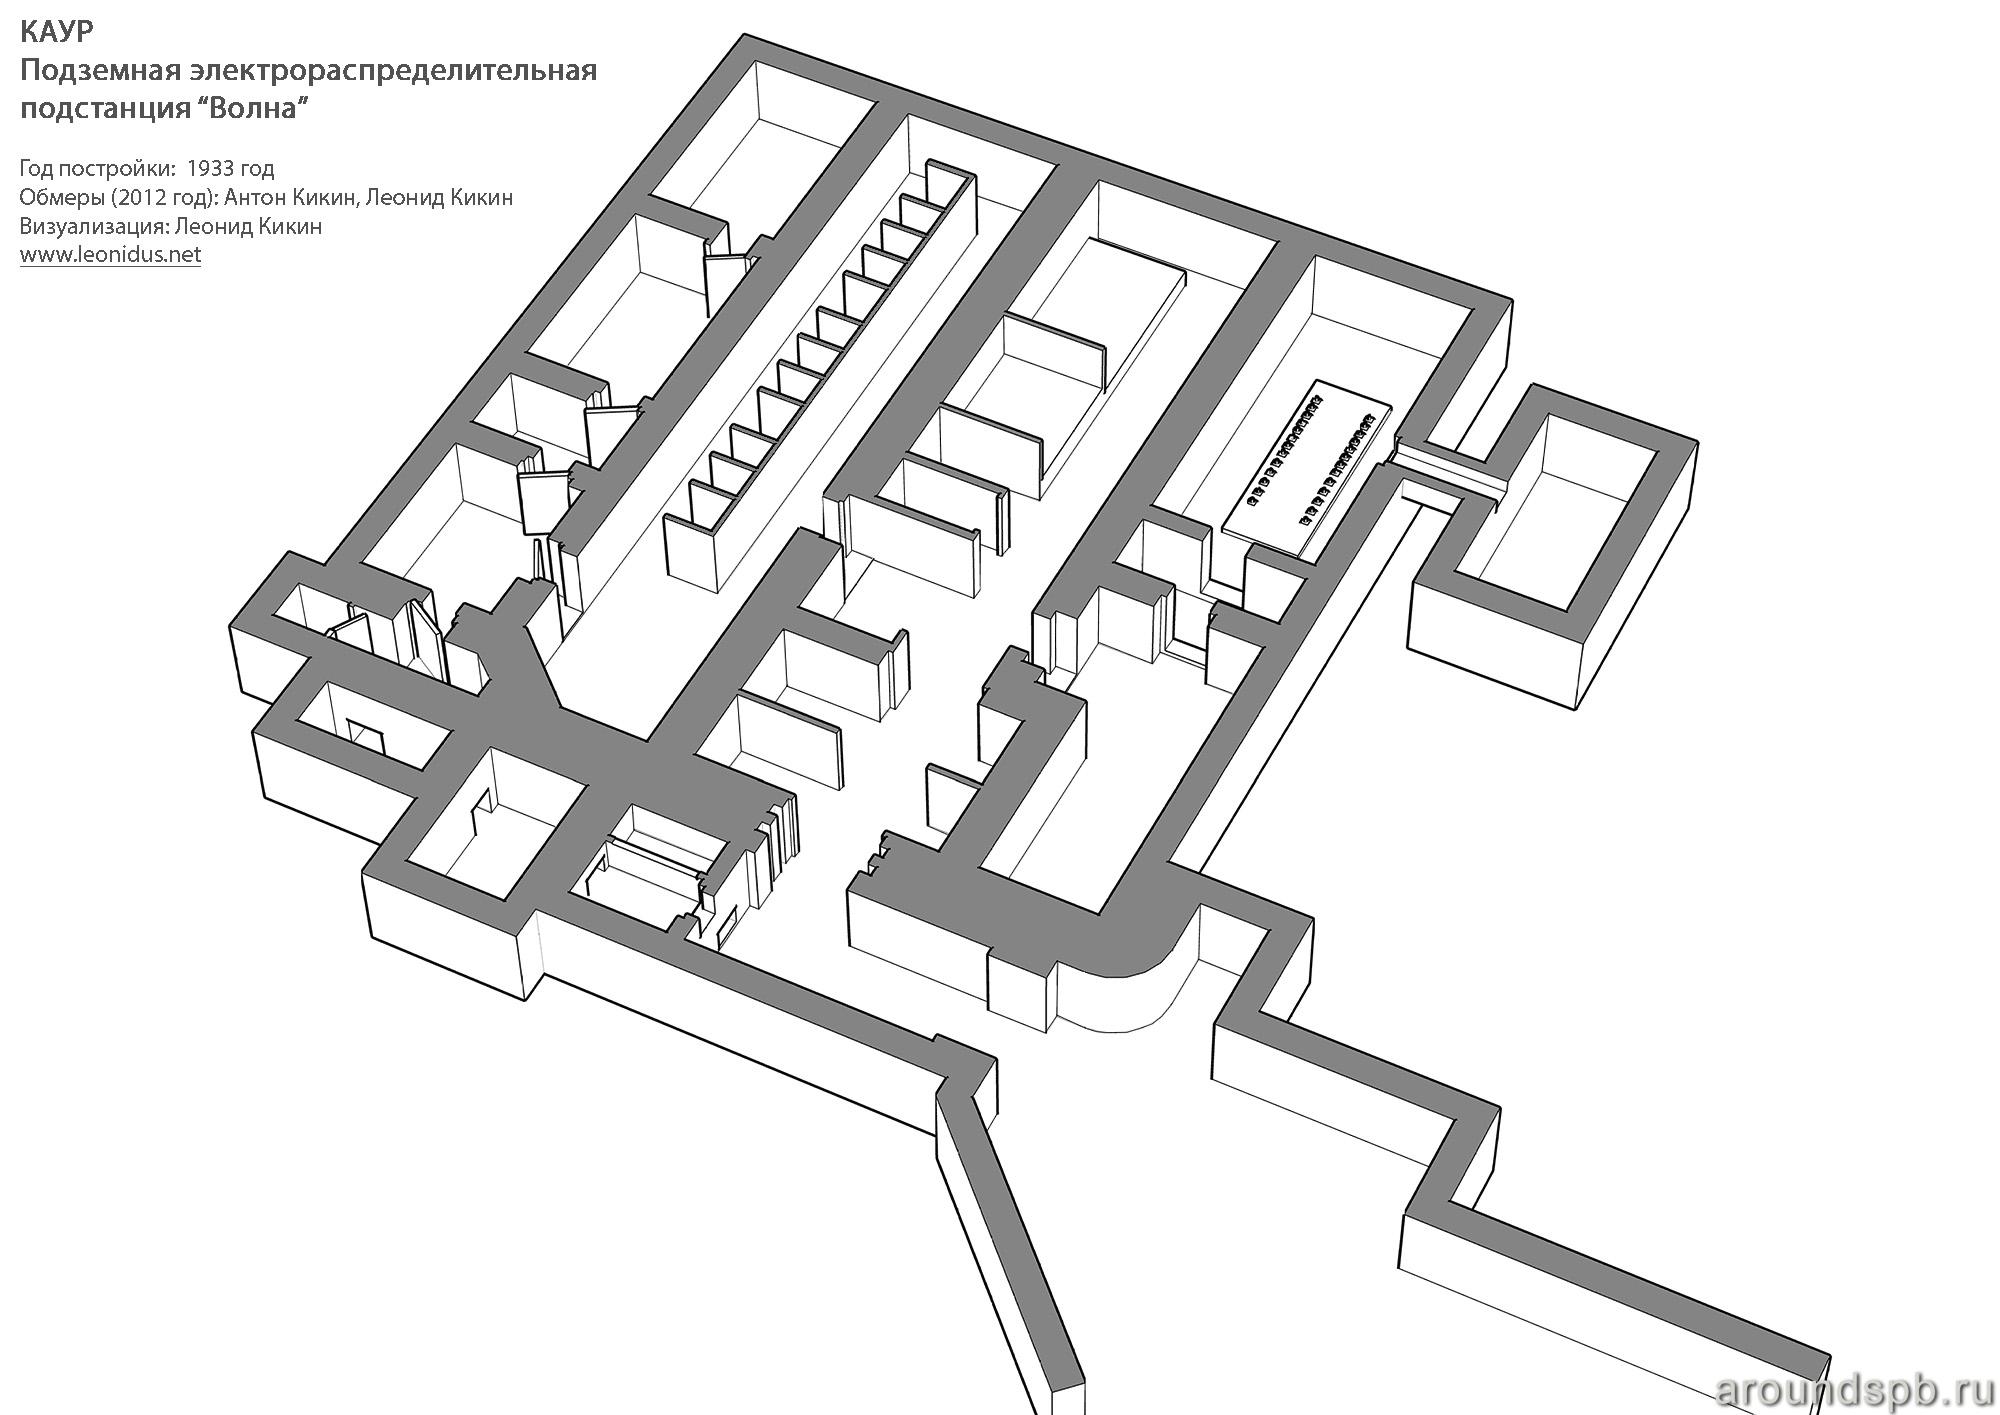 План нижнего этажа Лемболовской подстанции